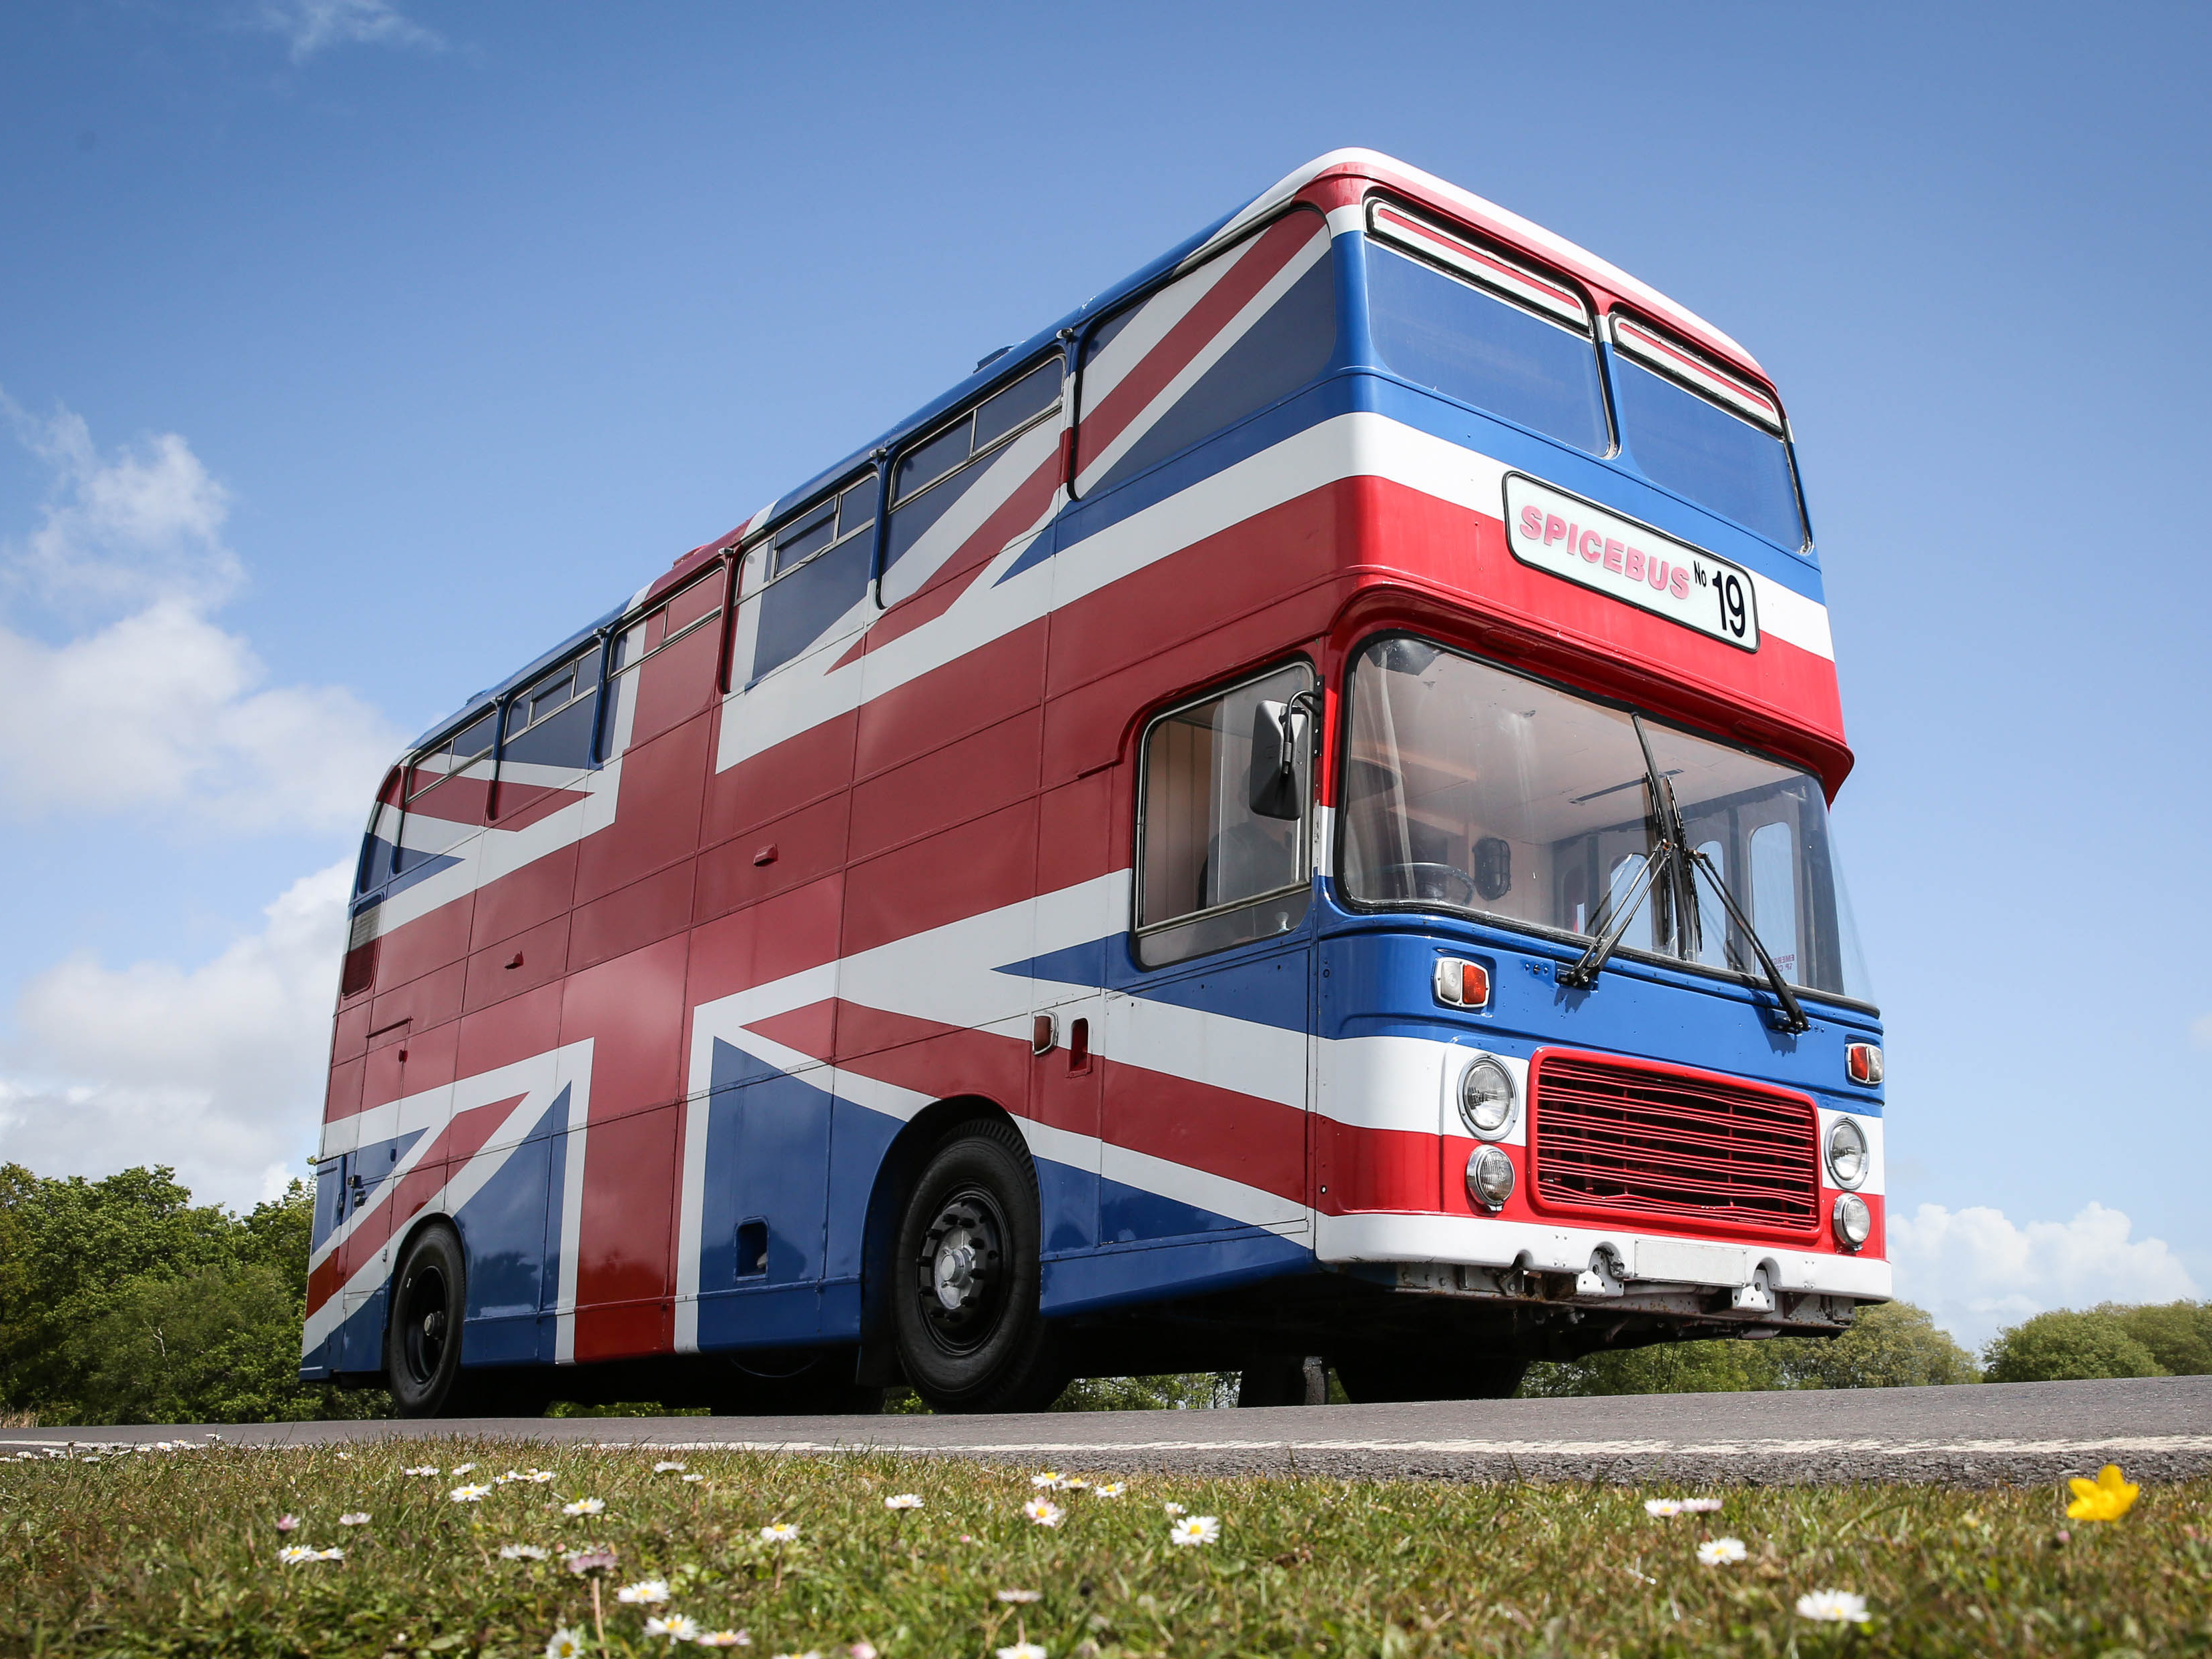 De Spice Bus kan in juni je onderkomen zijn als de Spice Girls optreden in het Wembley Stadium. Foto: Airbnb